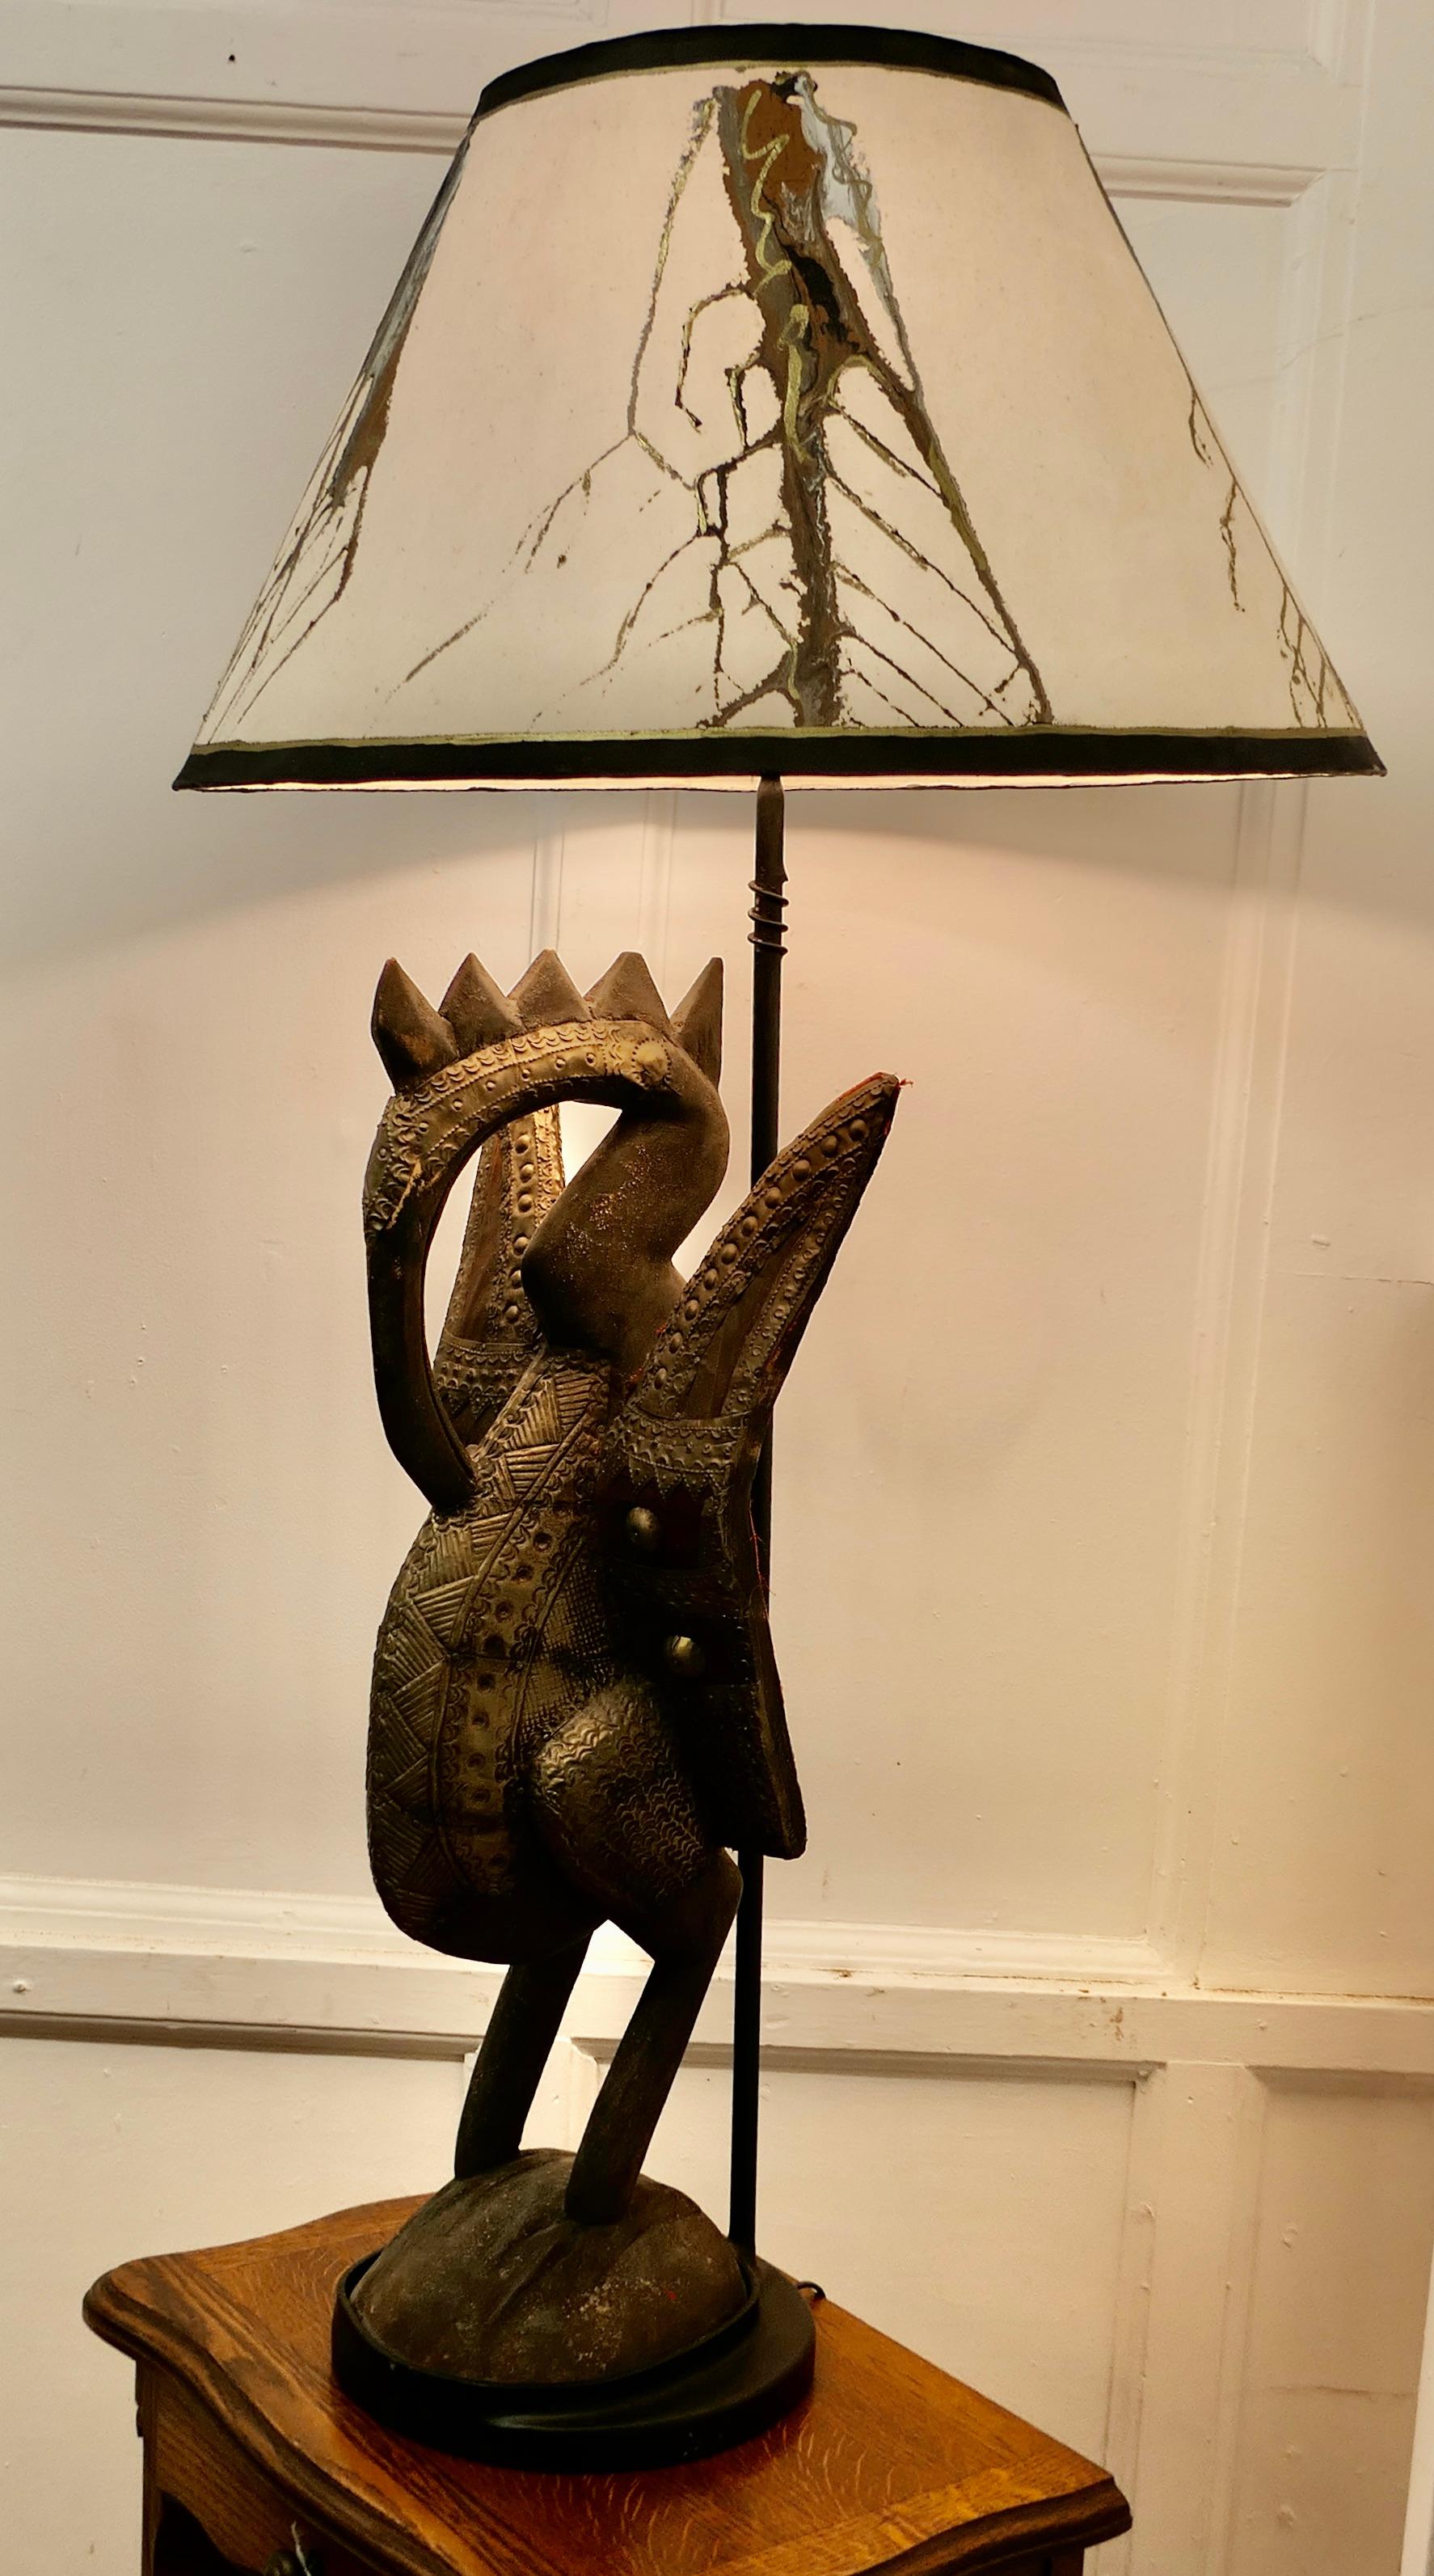 Sculpture africaine d'oiseau Senufo en bois sculpté, sertie comme une grande lampe

Cette merveilleuse sculpture ancienne a été placée sur un socle circulaire qui supporte une lampe l'éclairant par le haut
Il s'agit d'une sculpture d'oiseau calao